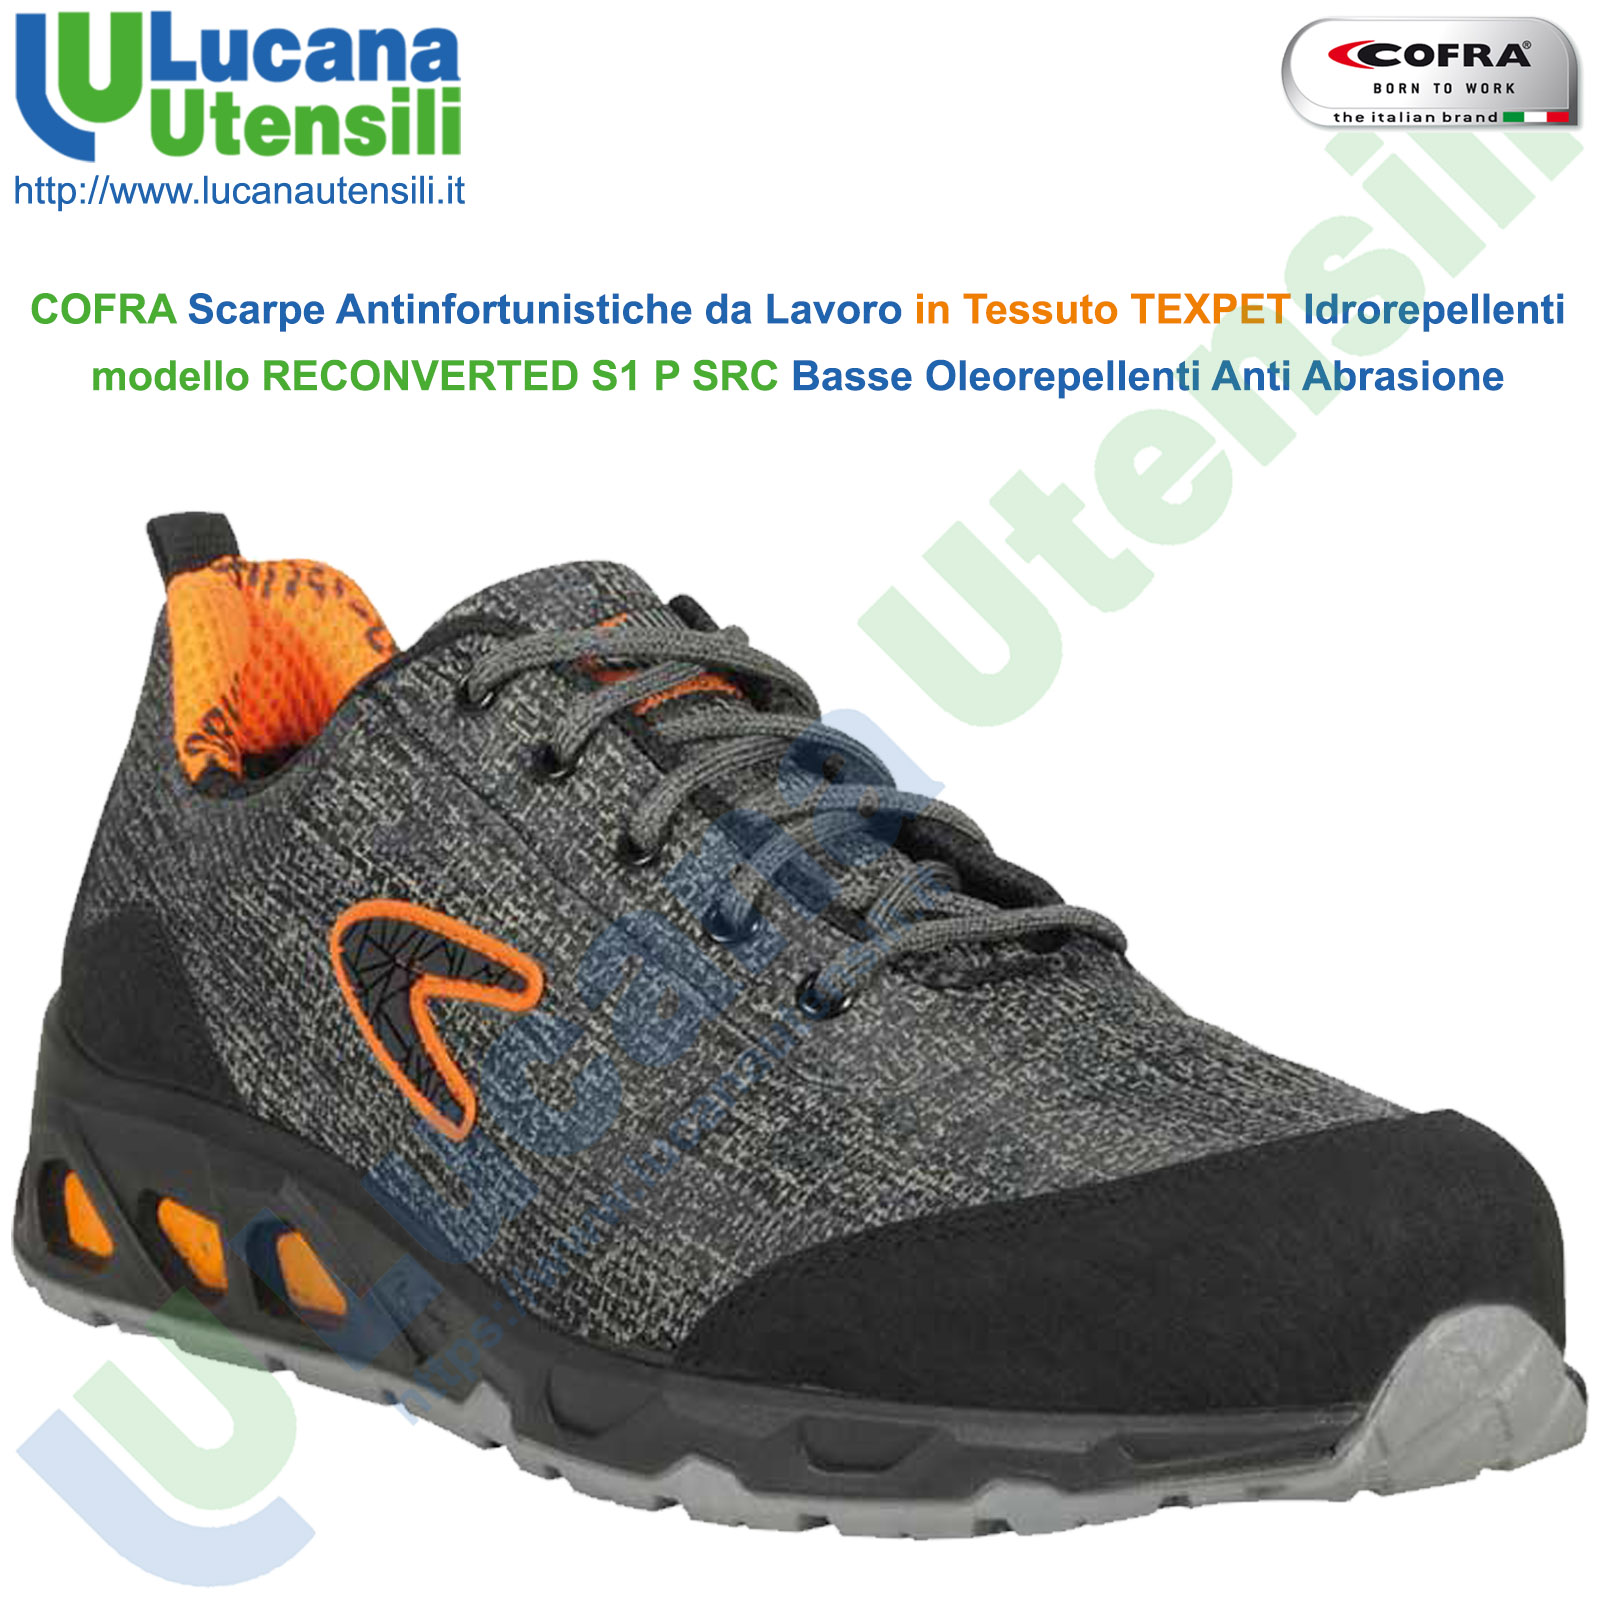 Scarpa antinfortunistica IMOLA S3 SRC calzature COFRA lavoro leggera flessibile 